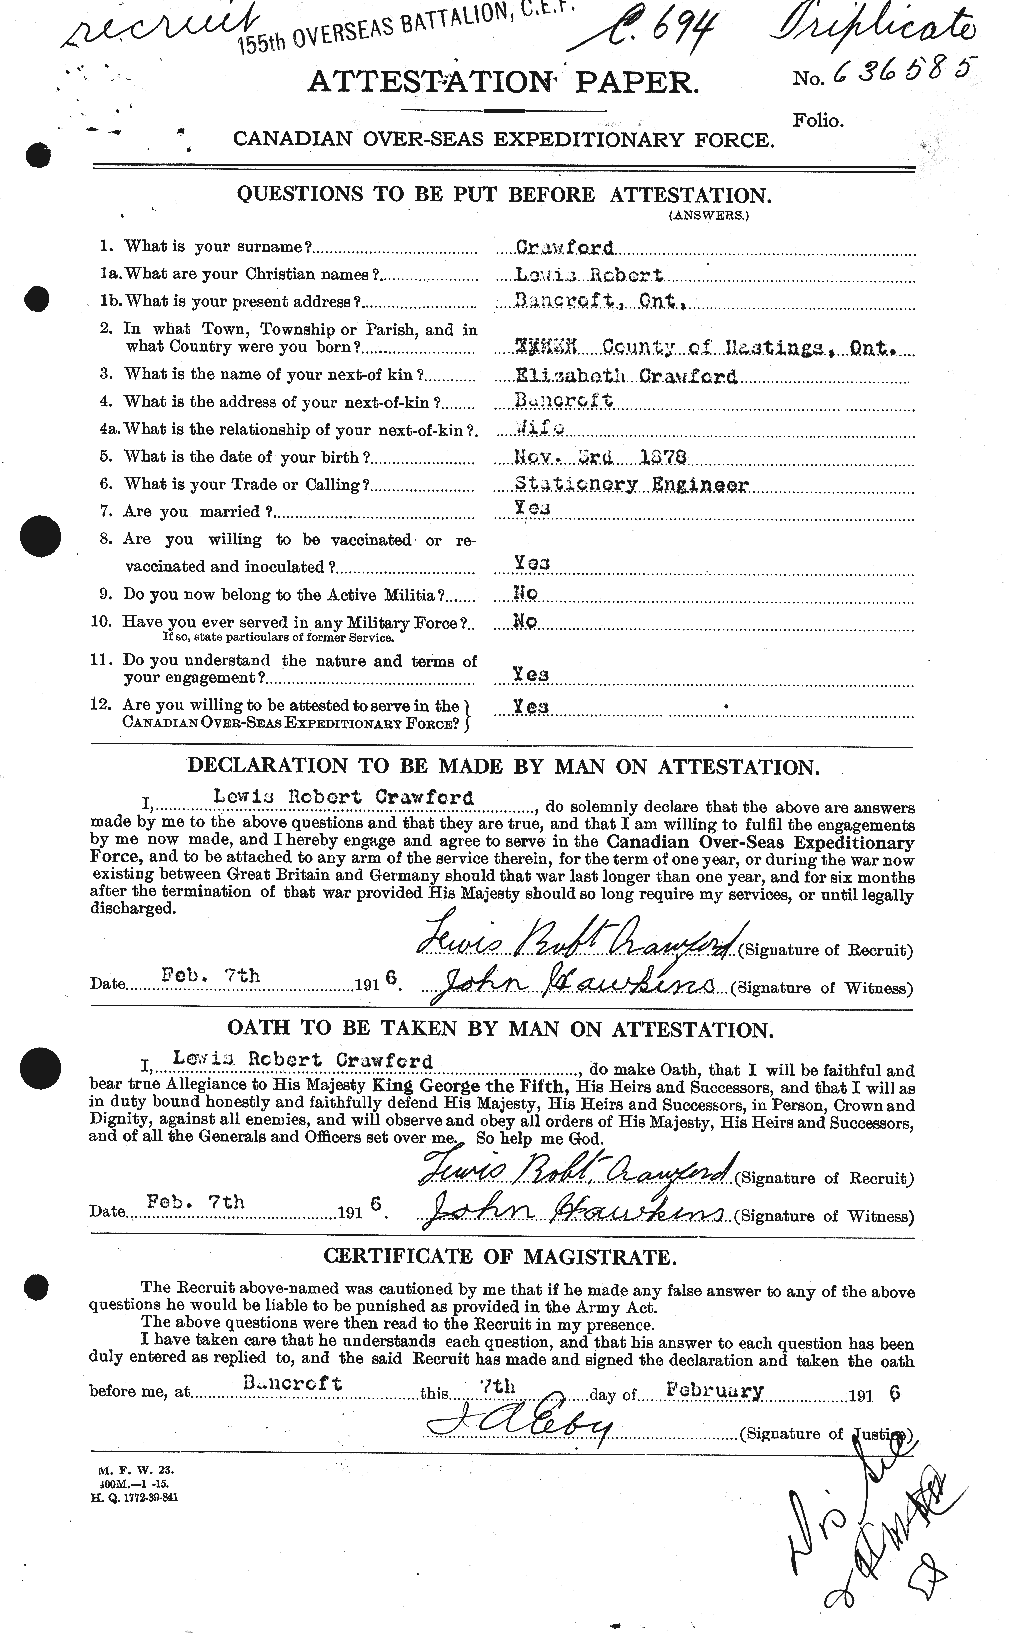 Dossiers du Personnel de la Première Guerre mondiale - CEC 061795a